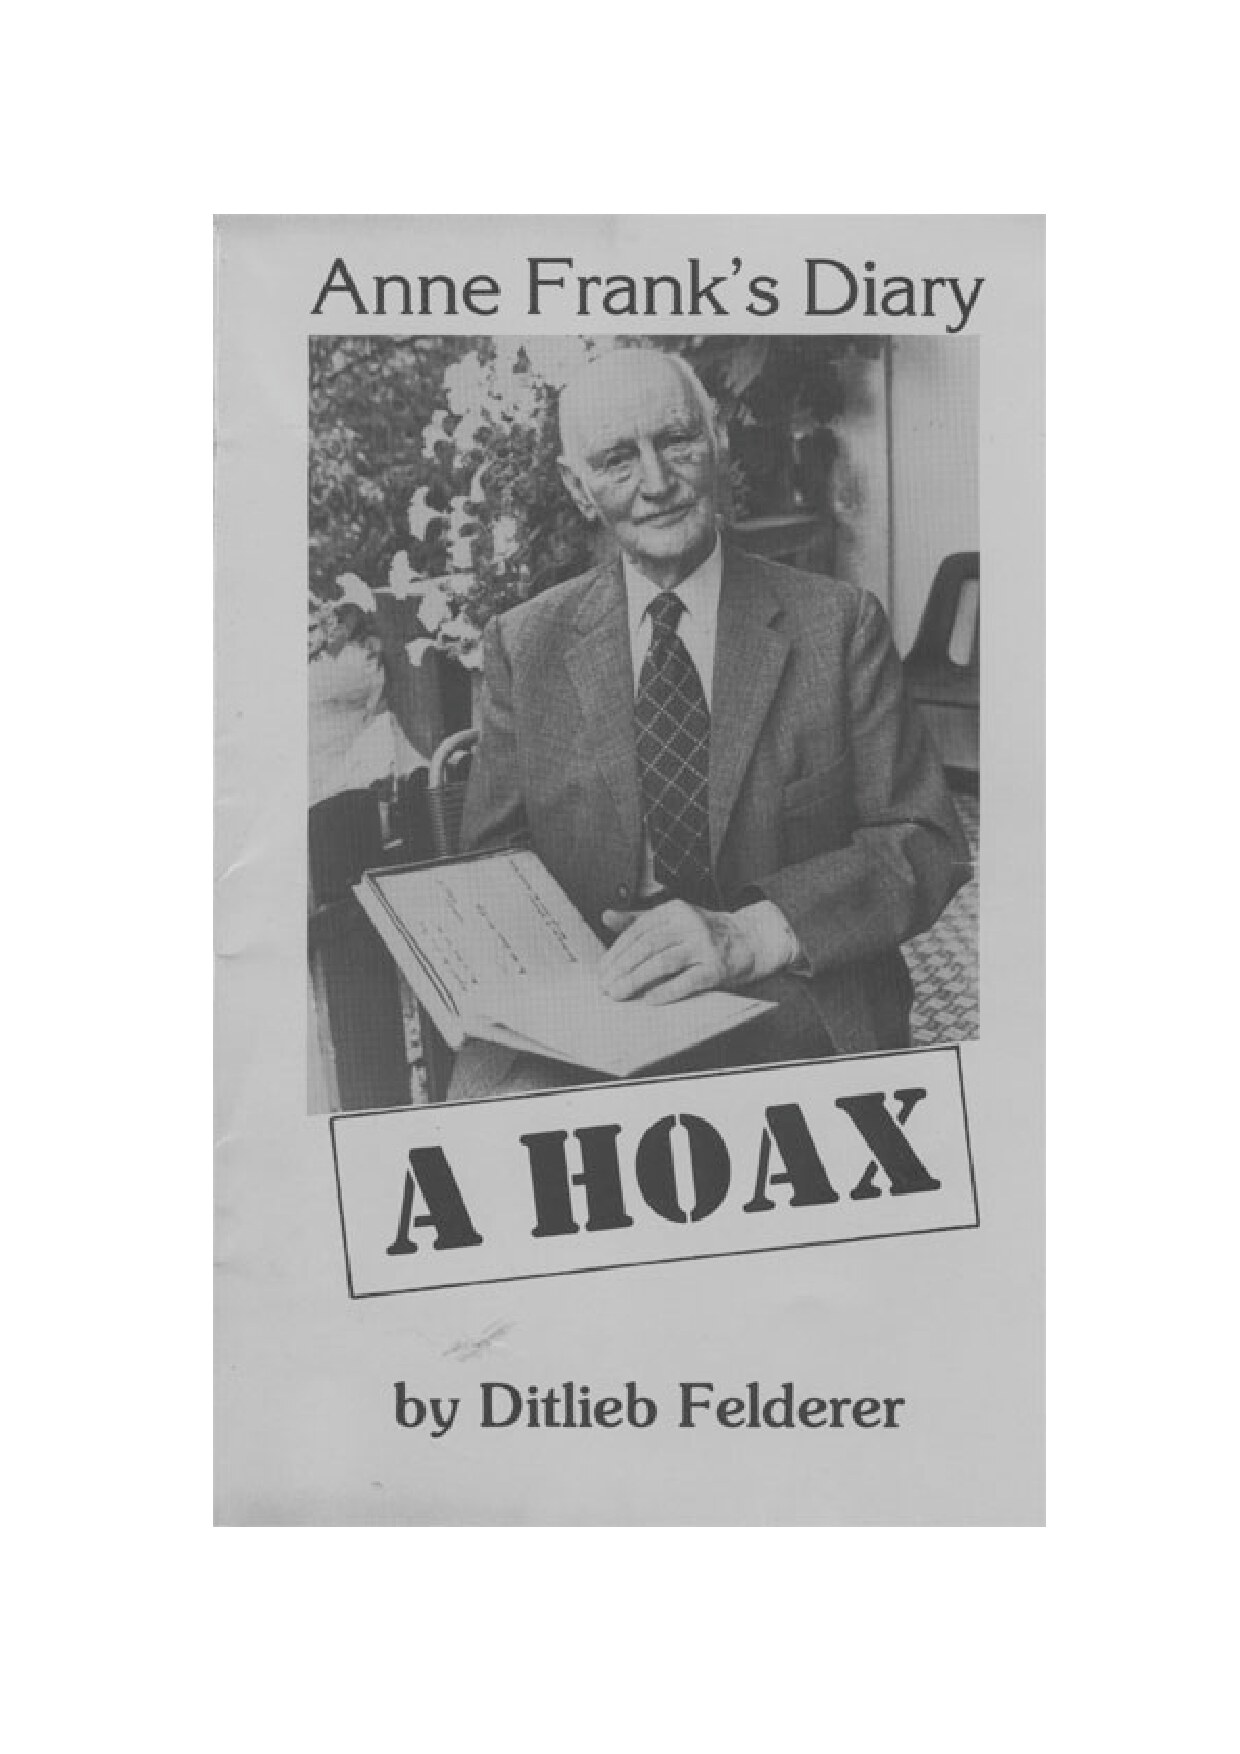 Anne Frank's Diary: A Hoax